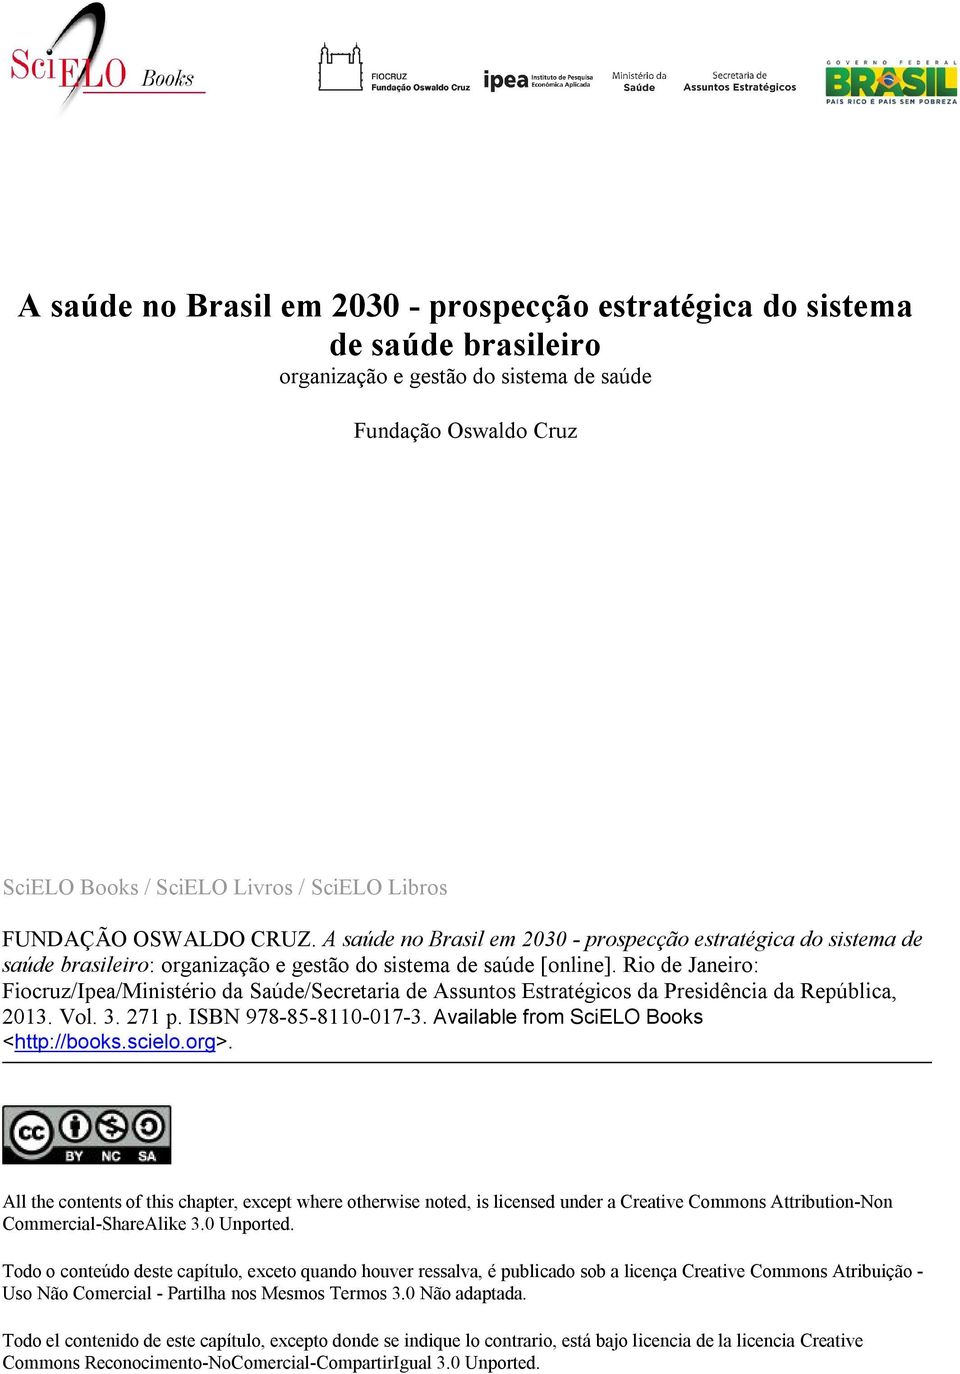 Rio de Janeiro: Fiocruz/Ipea/Ministério da Saúde/Secretaria de Assuntos Estratégicos da Presidência da República, 2013. Vol. 3. 271 p. ISBN 978-85-8110-017-3.